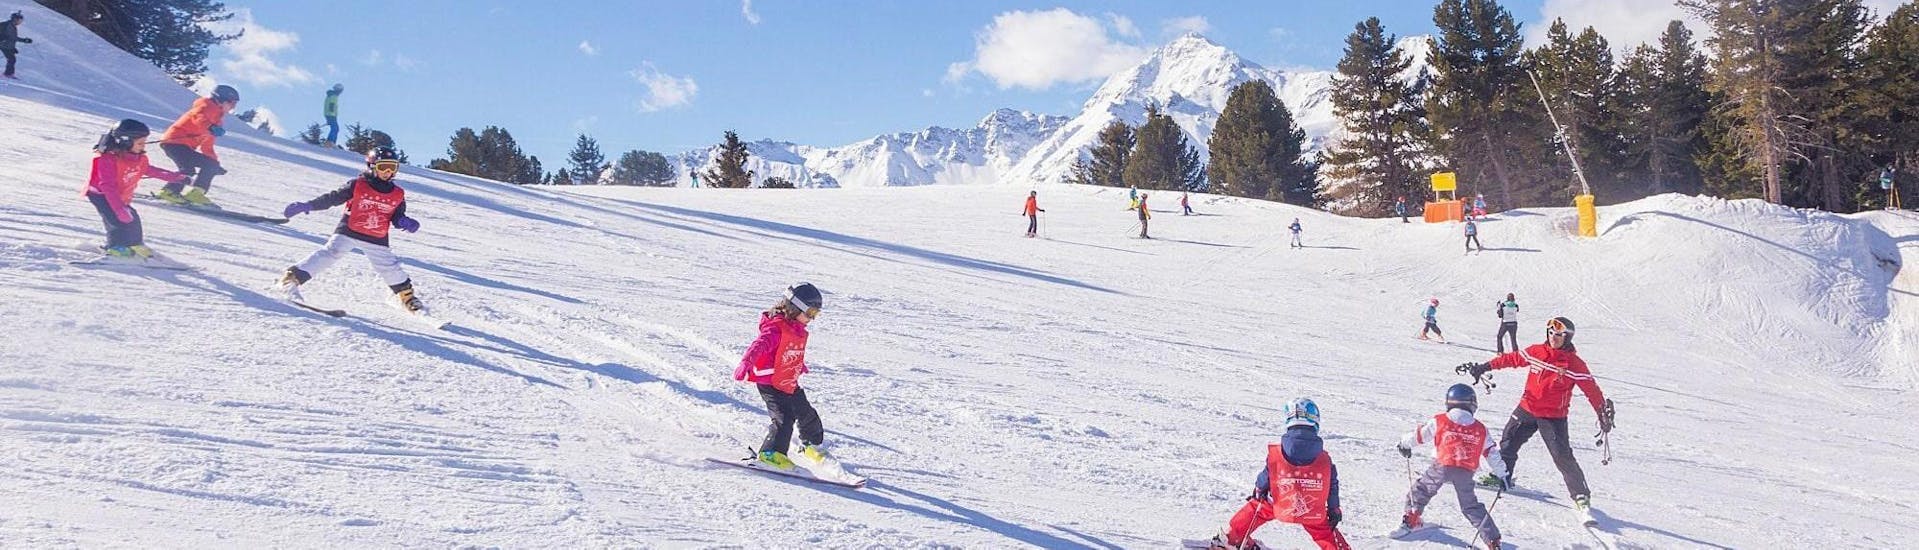 De skileraar van Sertorelli Skischool Bormio staat op de piste met de deelnemers tijdens de skilessen voor kinderen (4-12 jaar) voor gevorderden - hele dag